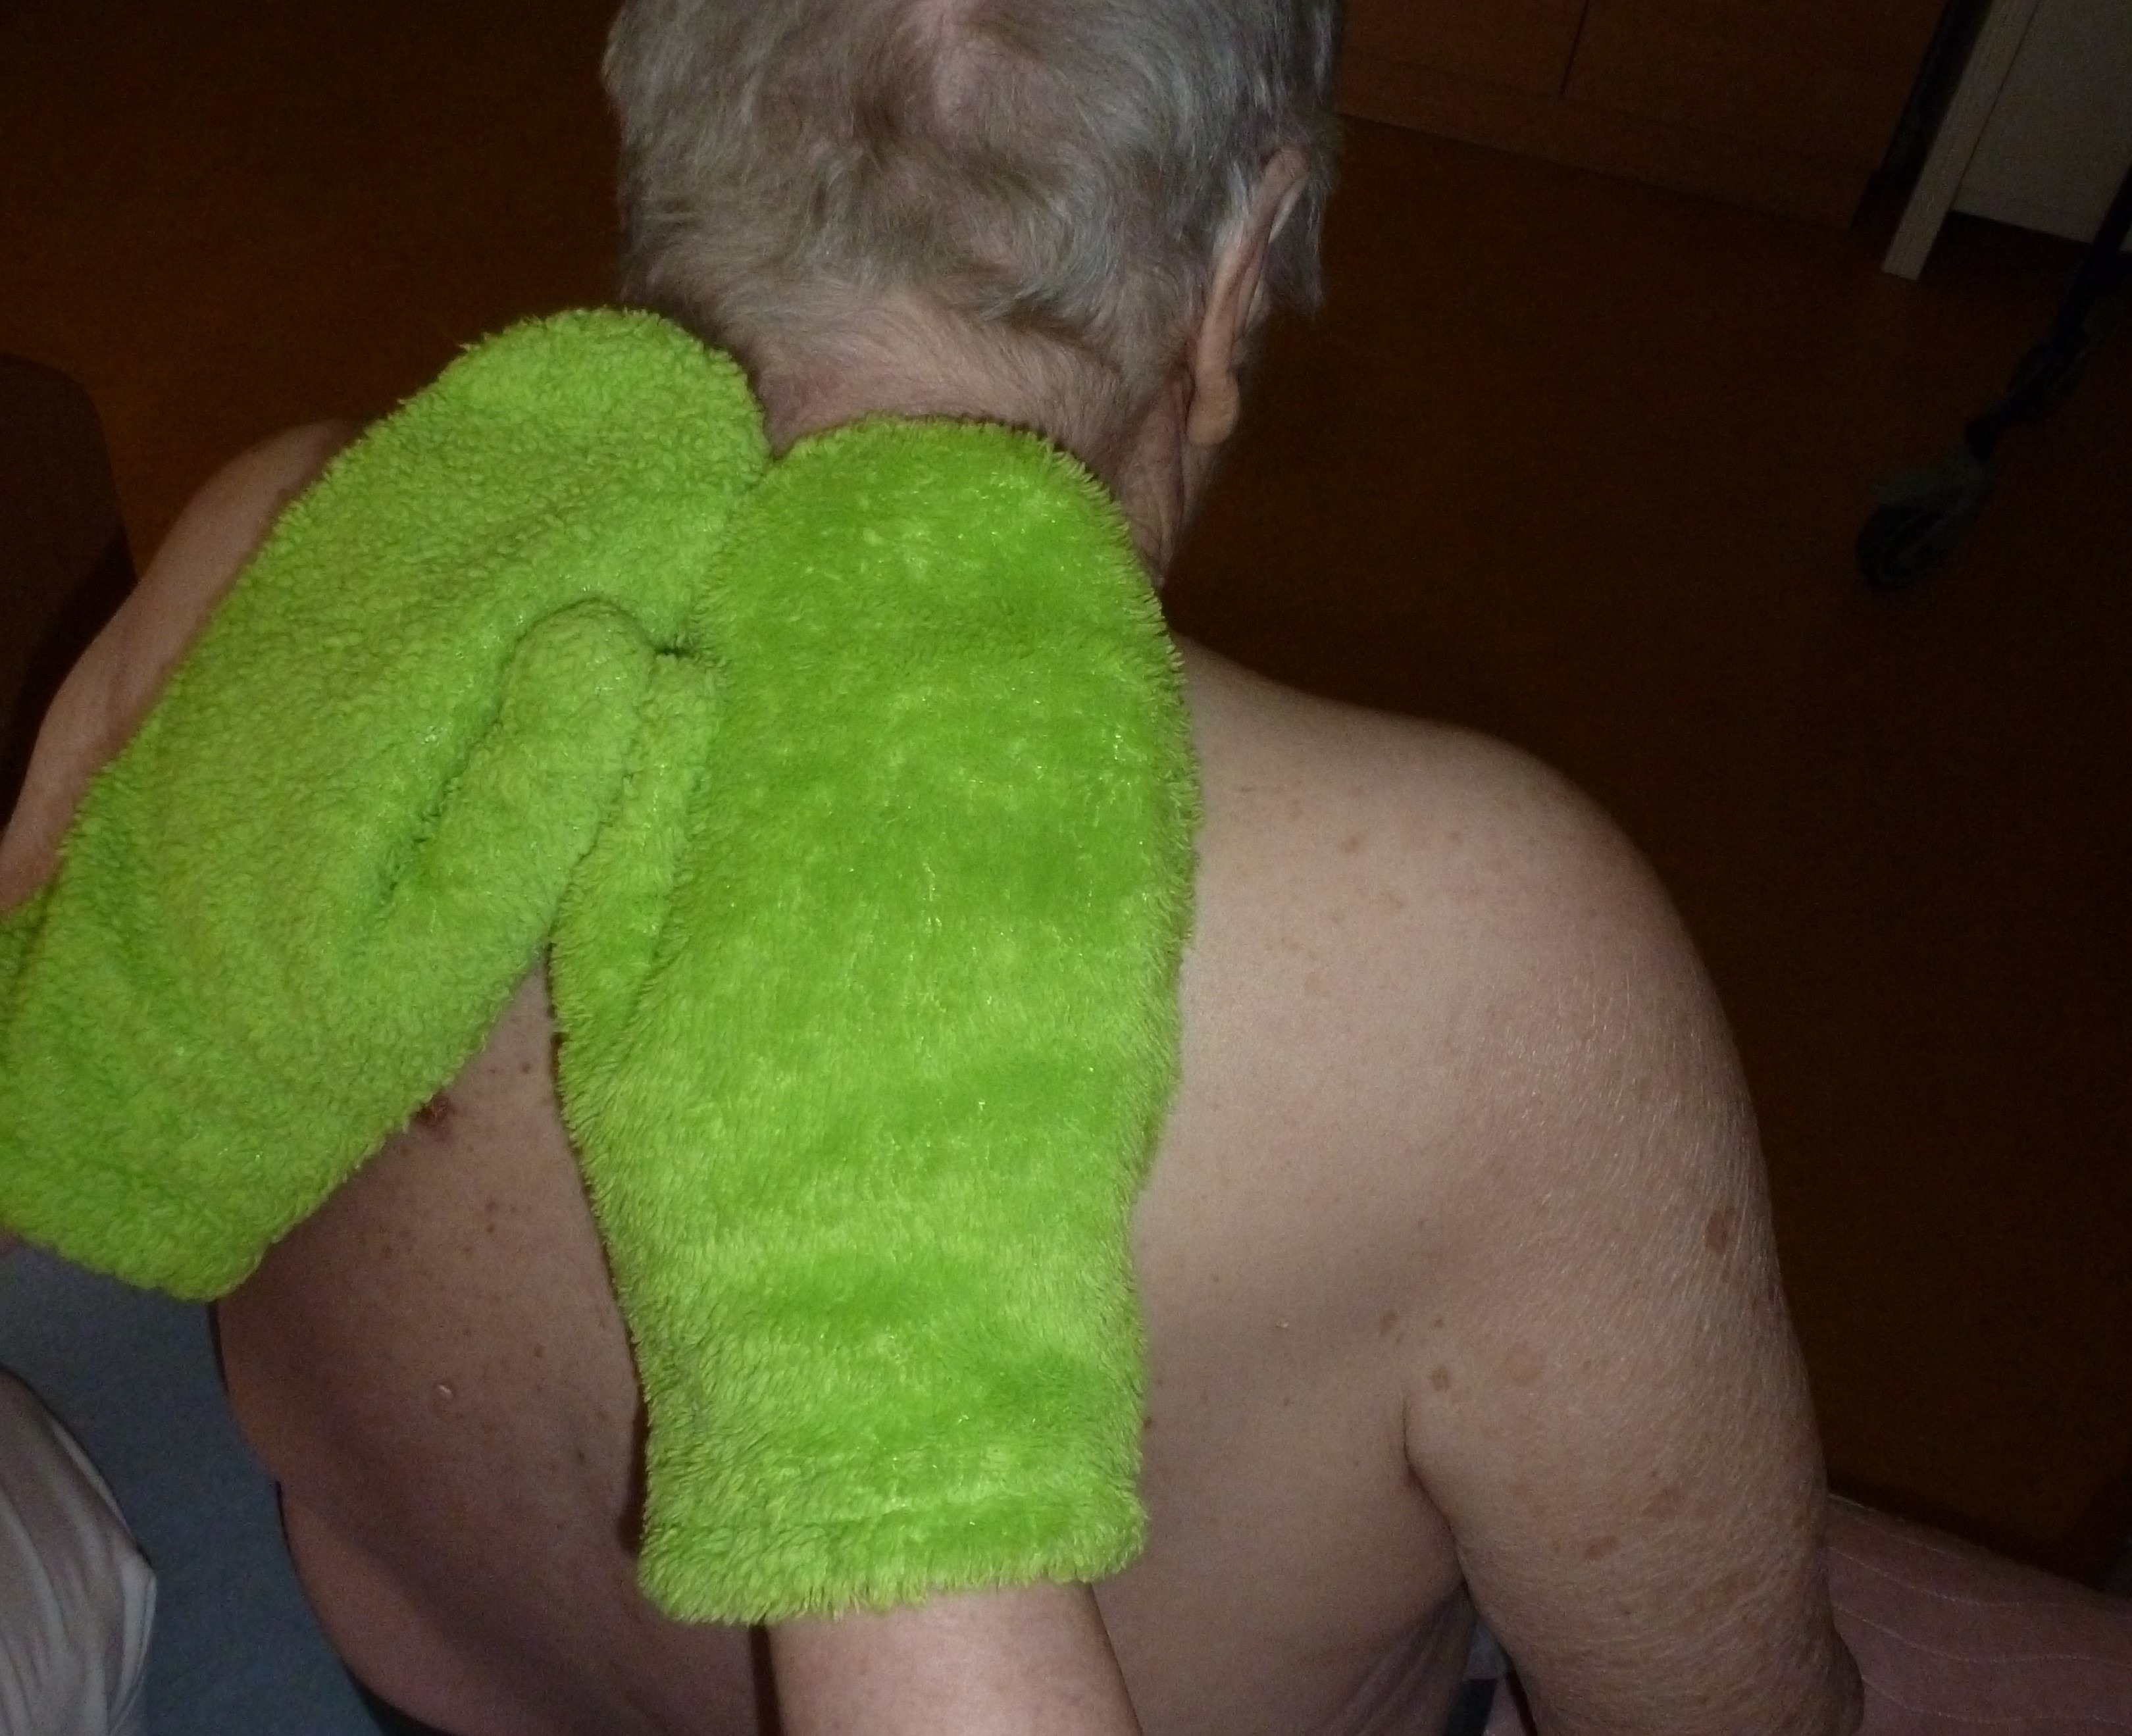 Pečovatelka přovádí klientovi bazální stimulaci pomocí forté rukavic